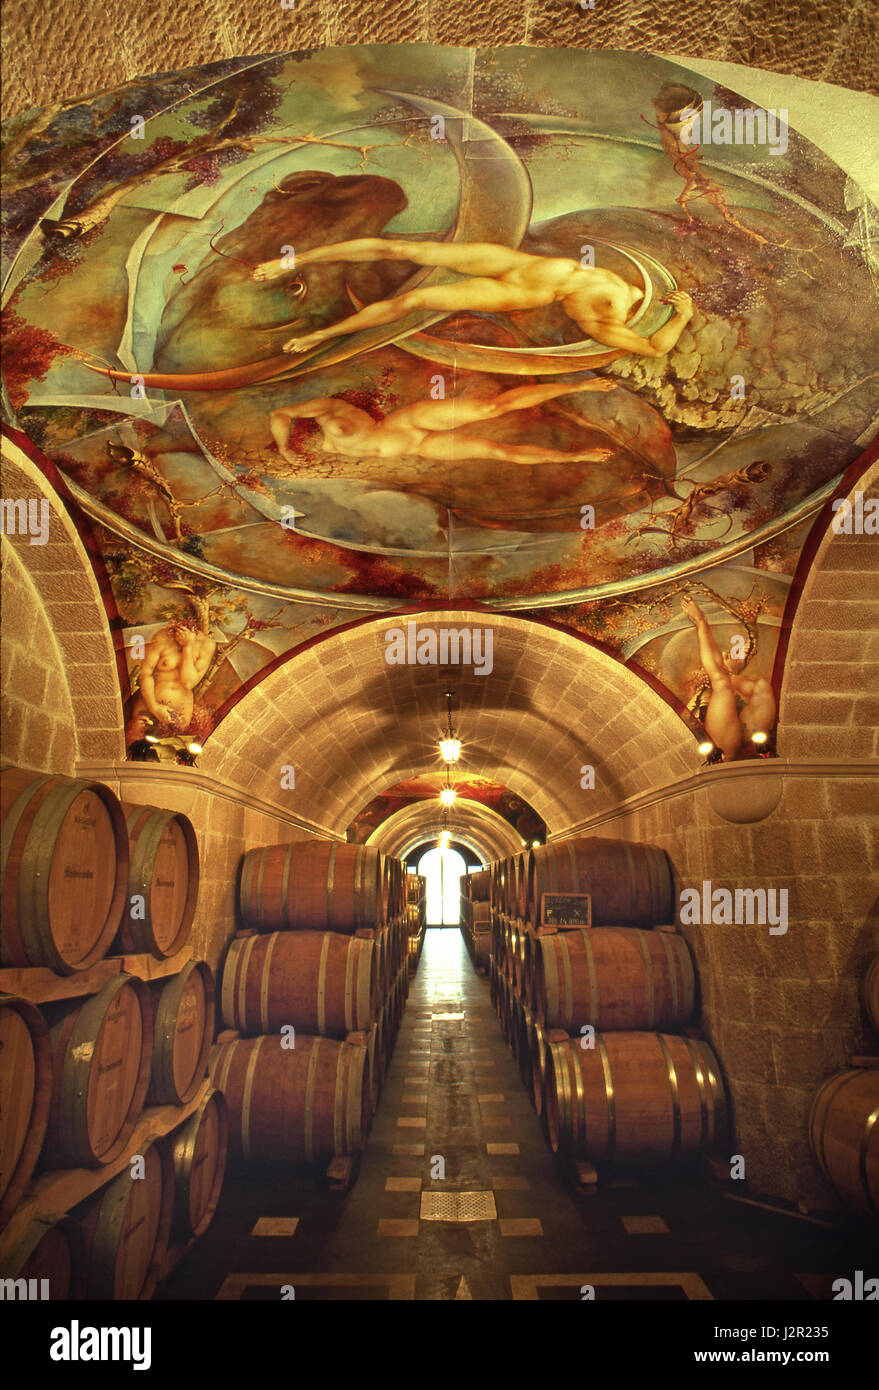 Mastroberardino Italienischer fass-Ausbau Weinkeller mit handbemalten Fresken, die das Ethos des Weinguts von Kunst und erlesenen Weinen aus Kampanien, Italien, vereinen Stockfoto